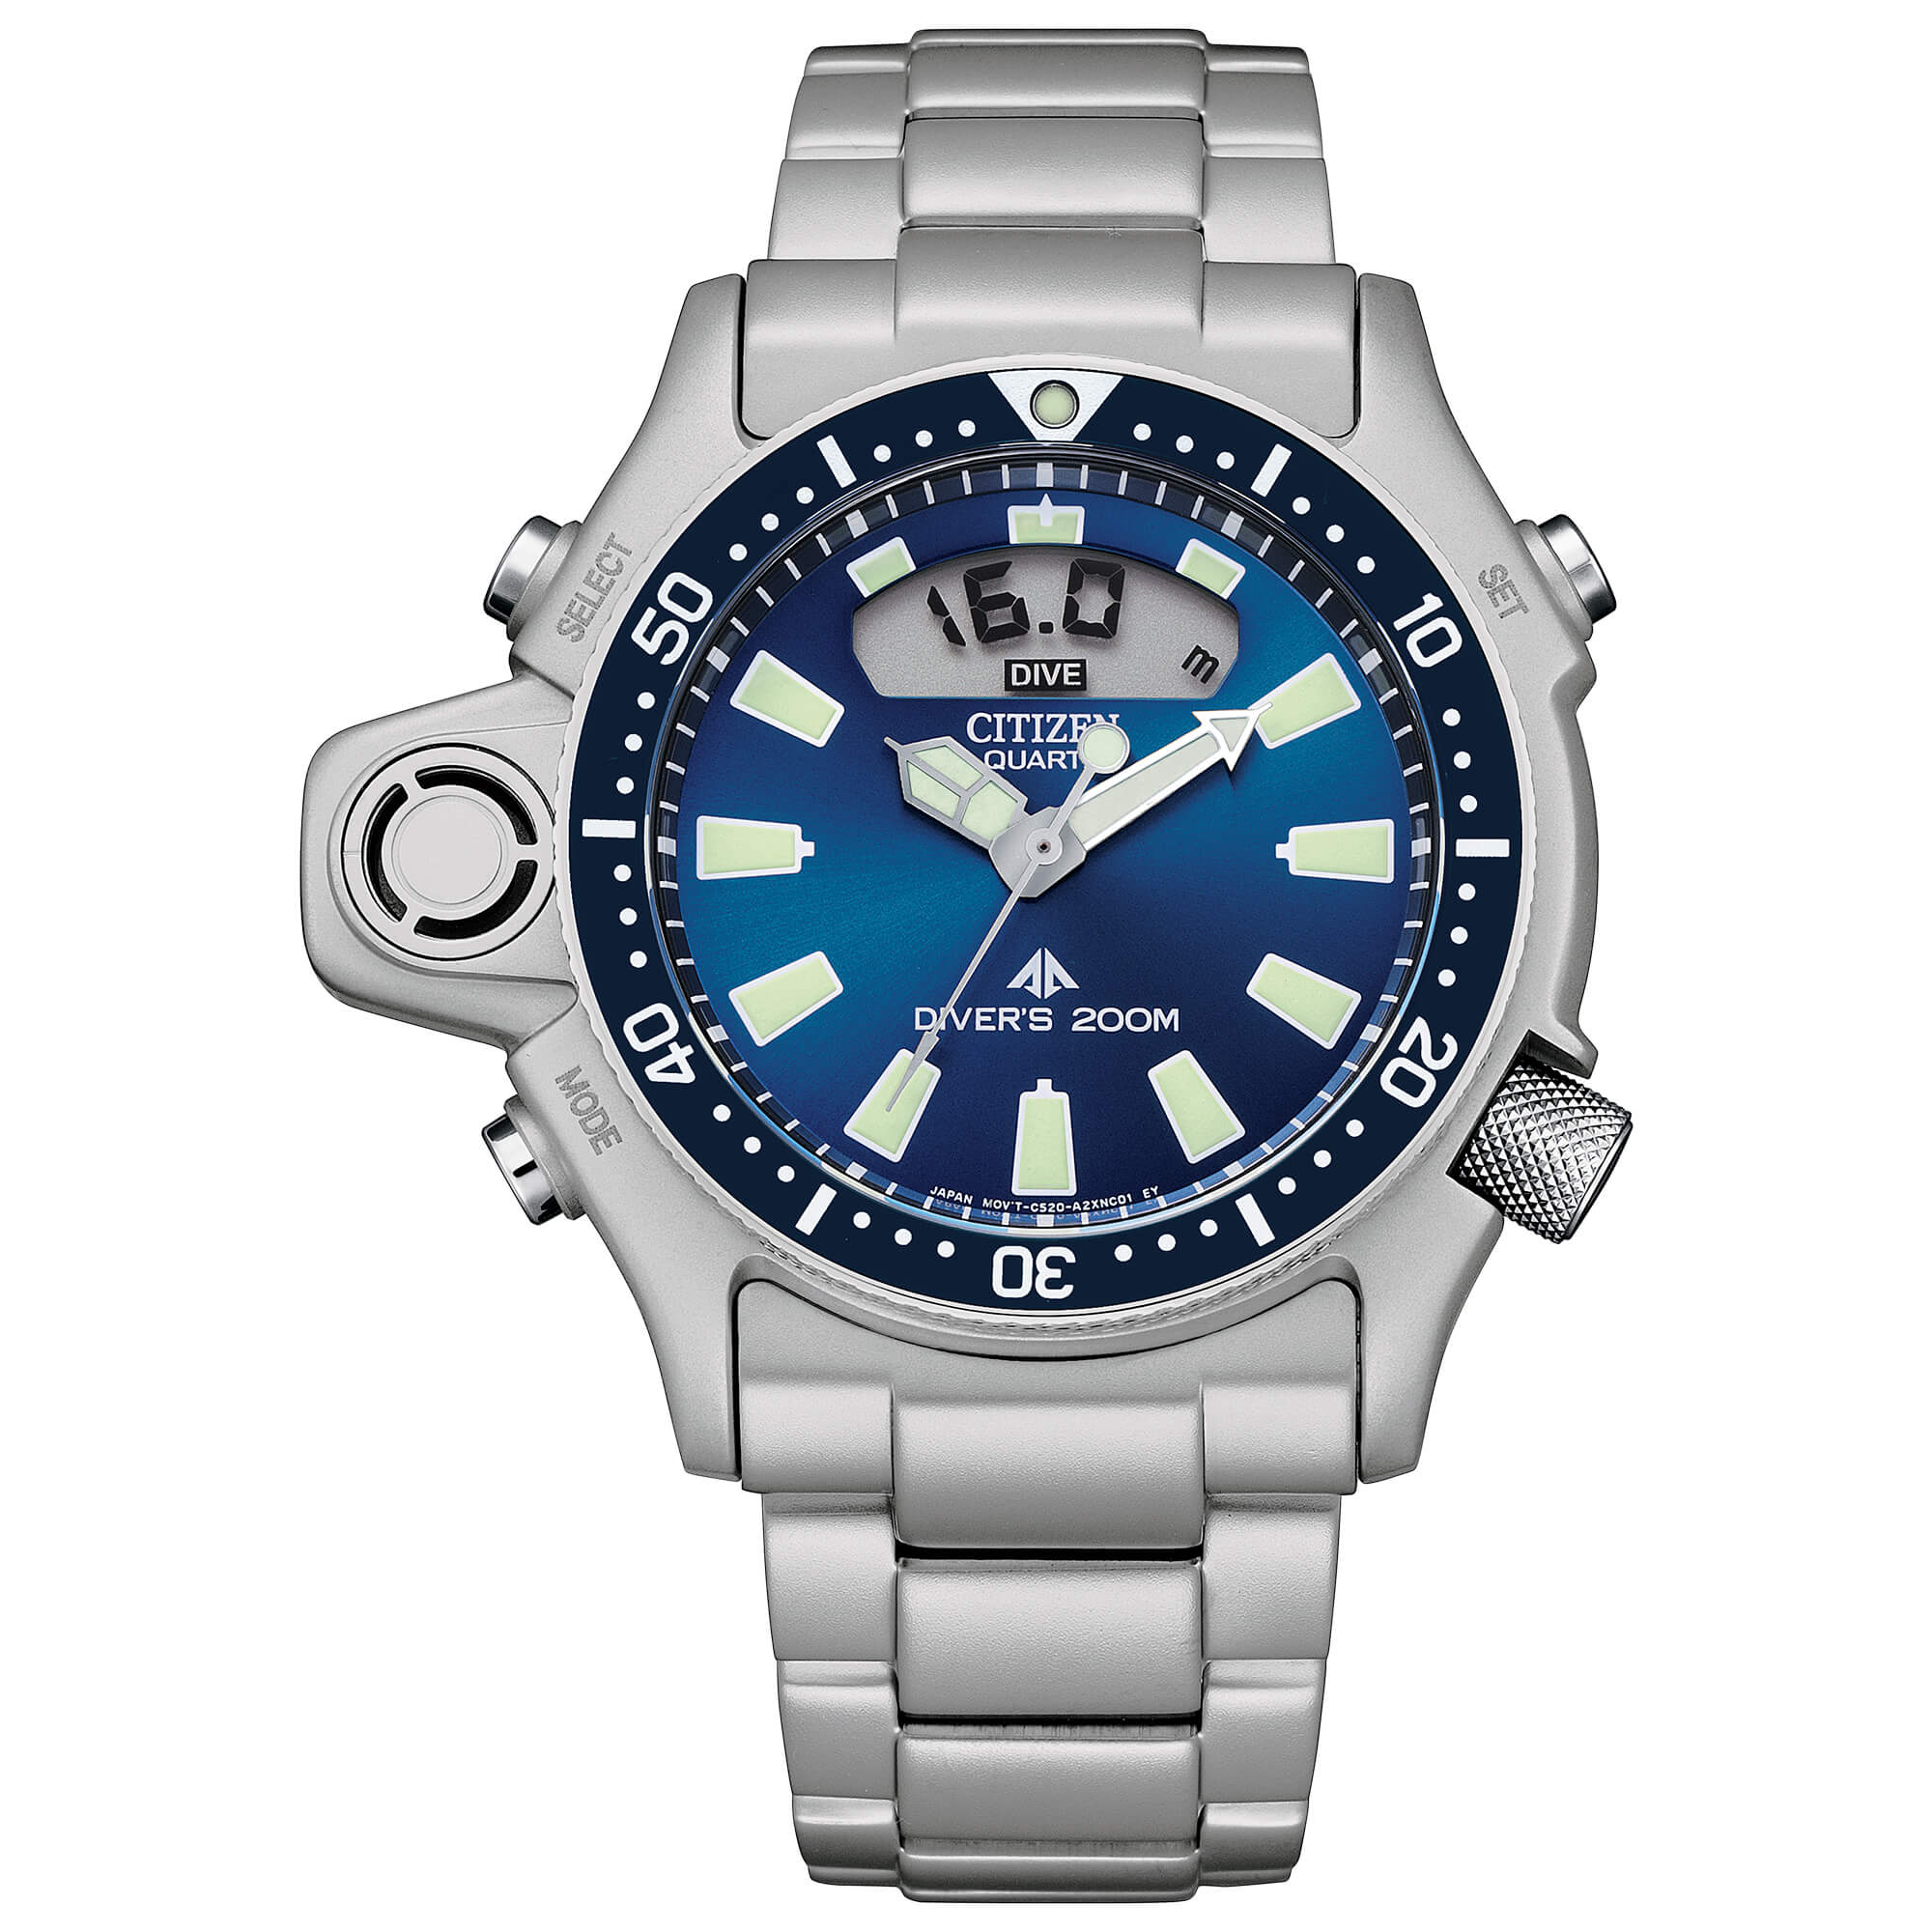 Orologio CITIZEN JP2000-67L Aqualand 1 Diver's Professional|bonini-gioielli